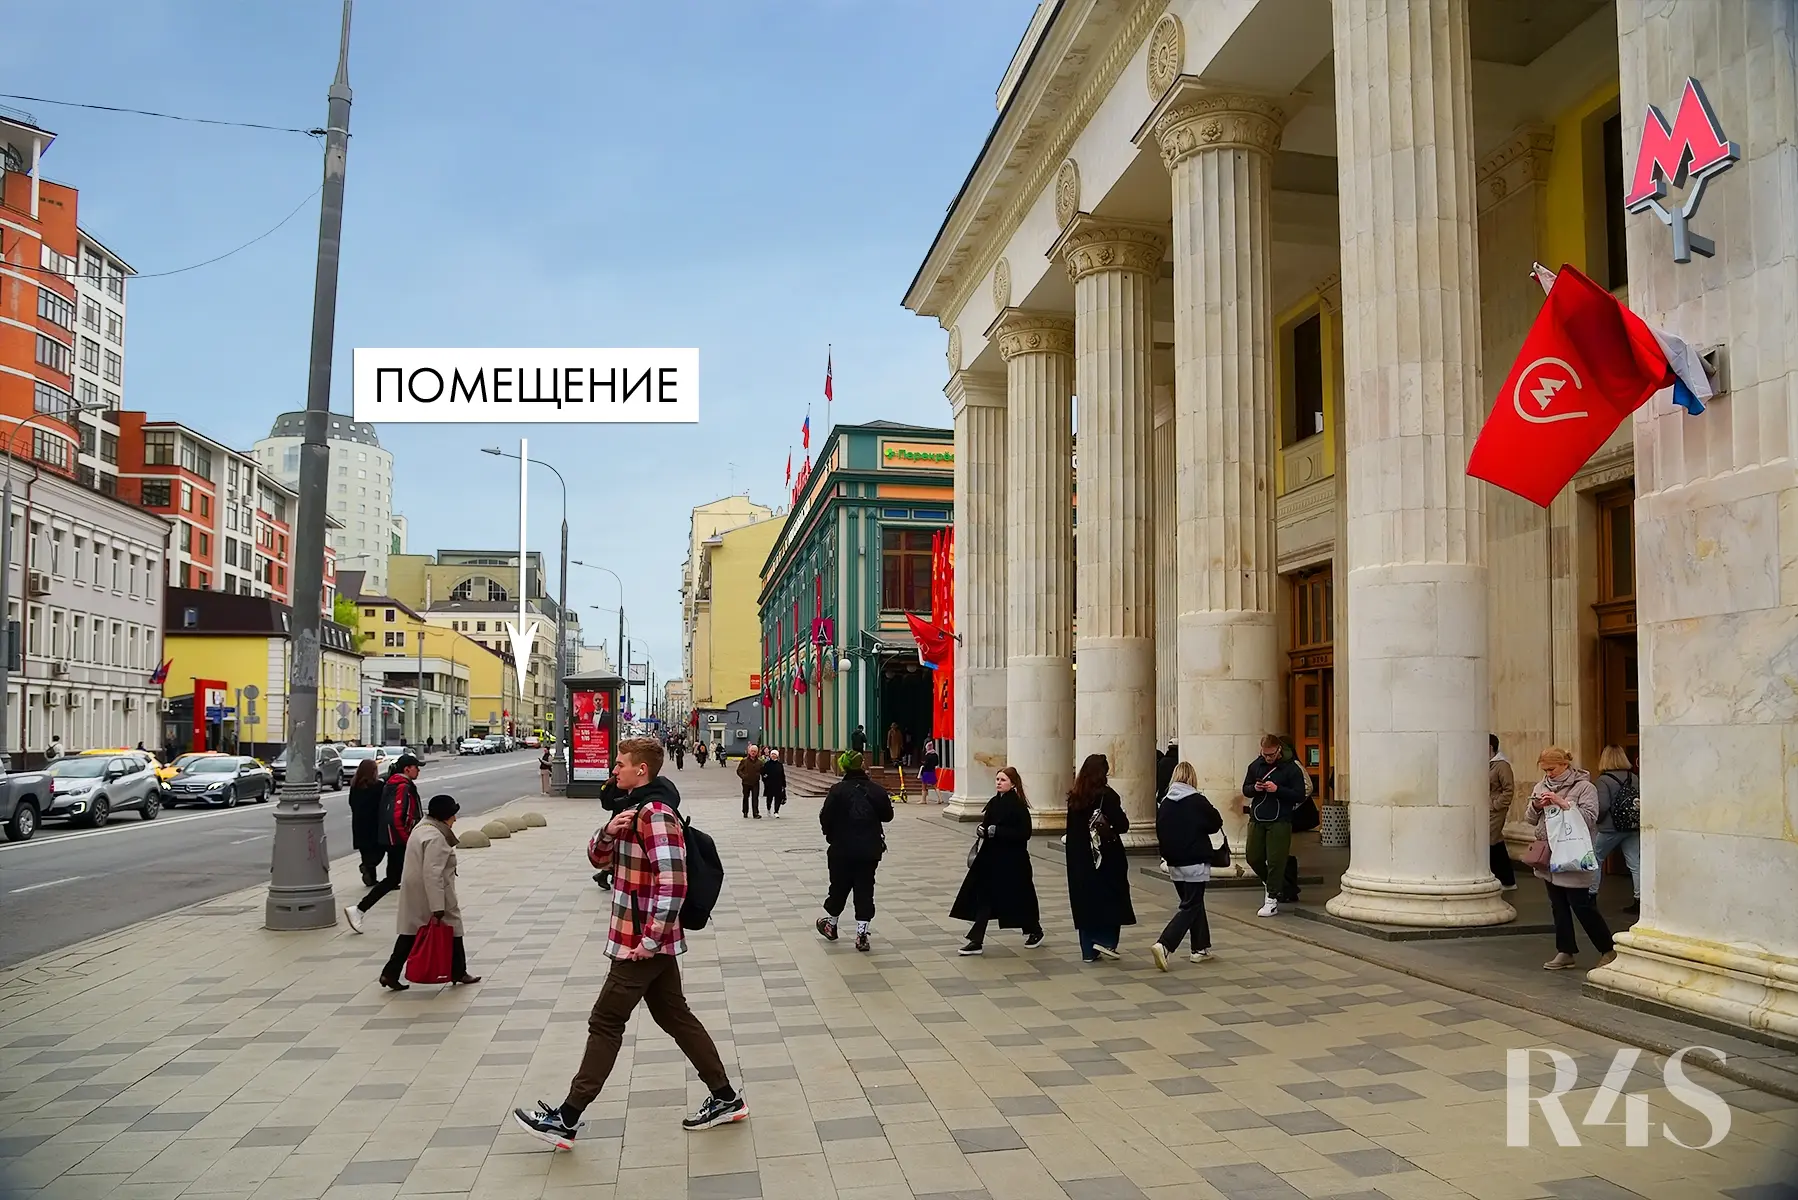 Аренда торговых помещений площадью 13 - 380.5 м2 в Москве:  Новослободская, 19с1 R4S | Realty4Sale